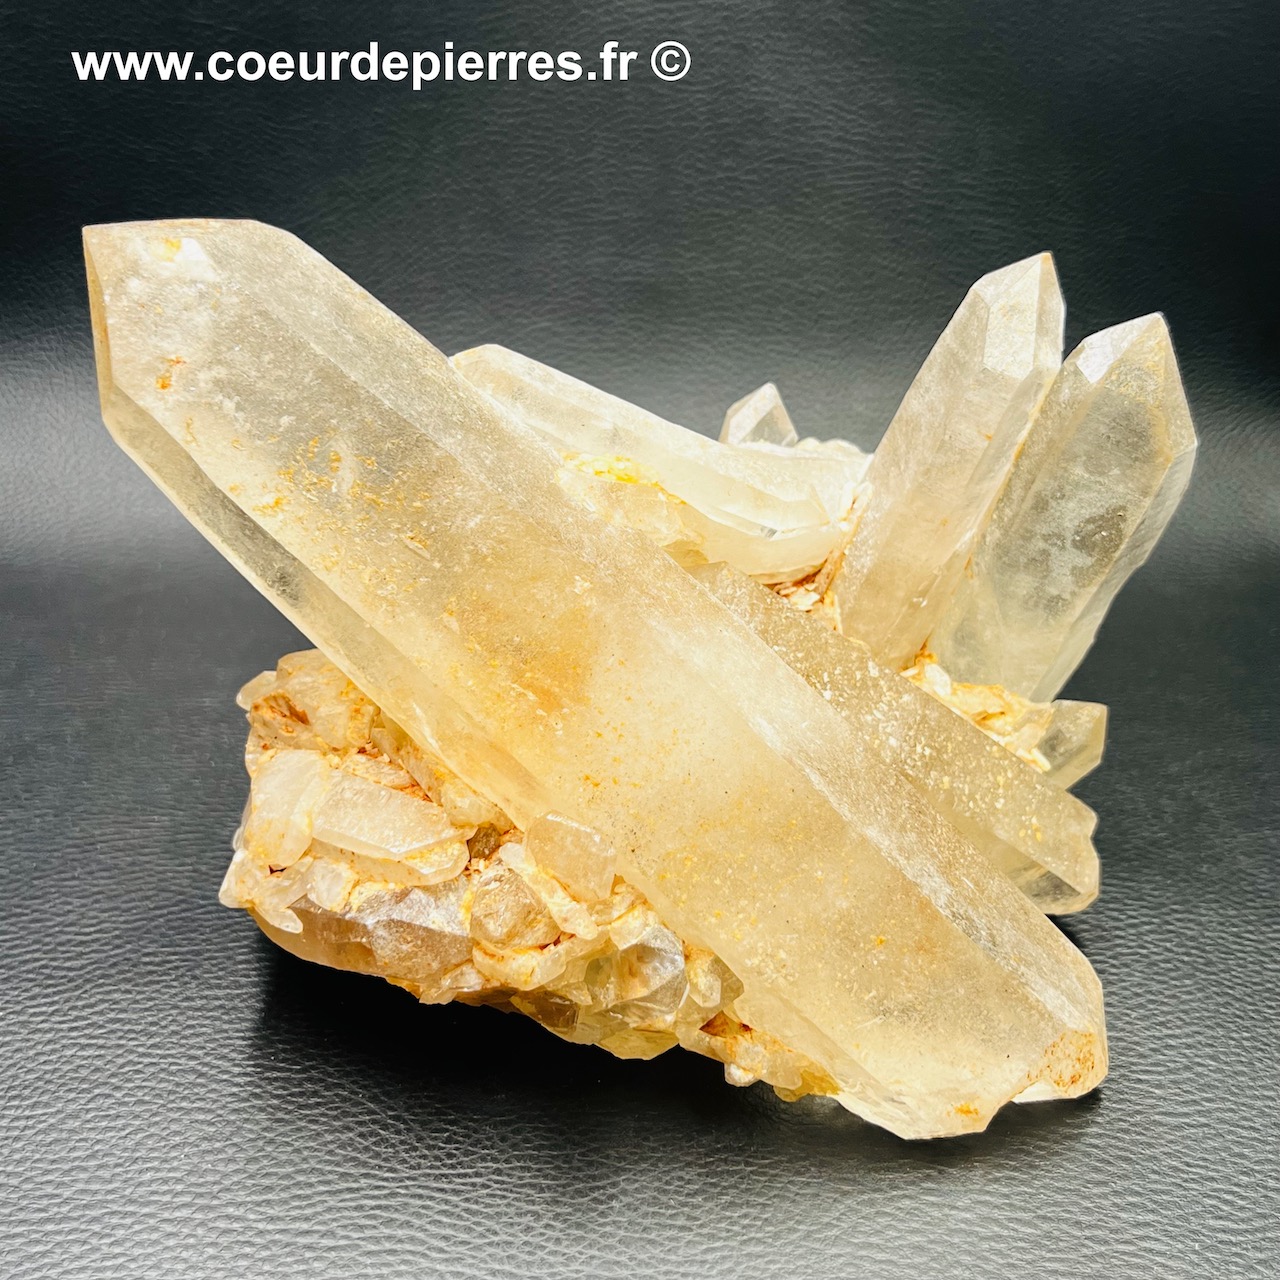 Druse de cristal de roche du Brésil (réf gq42)